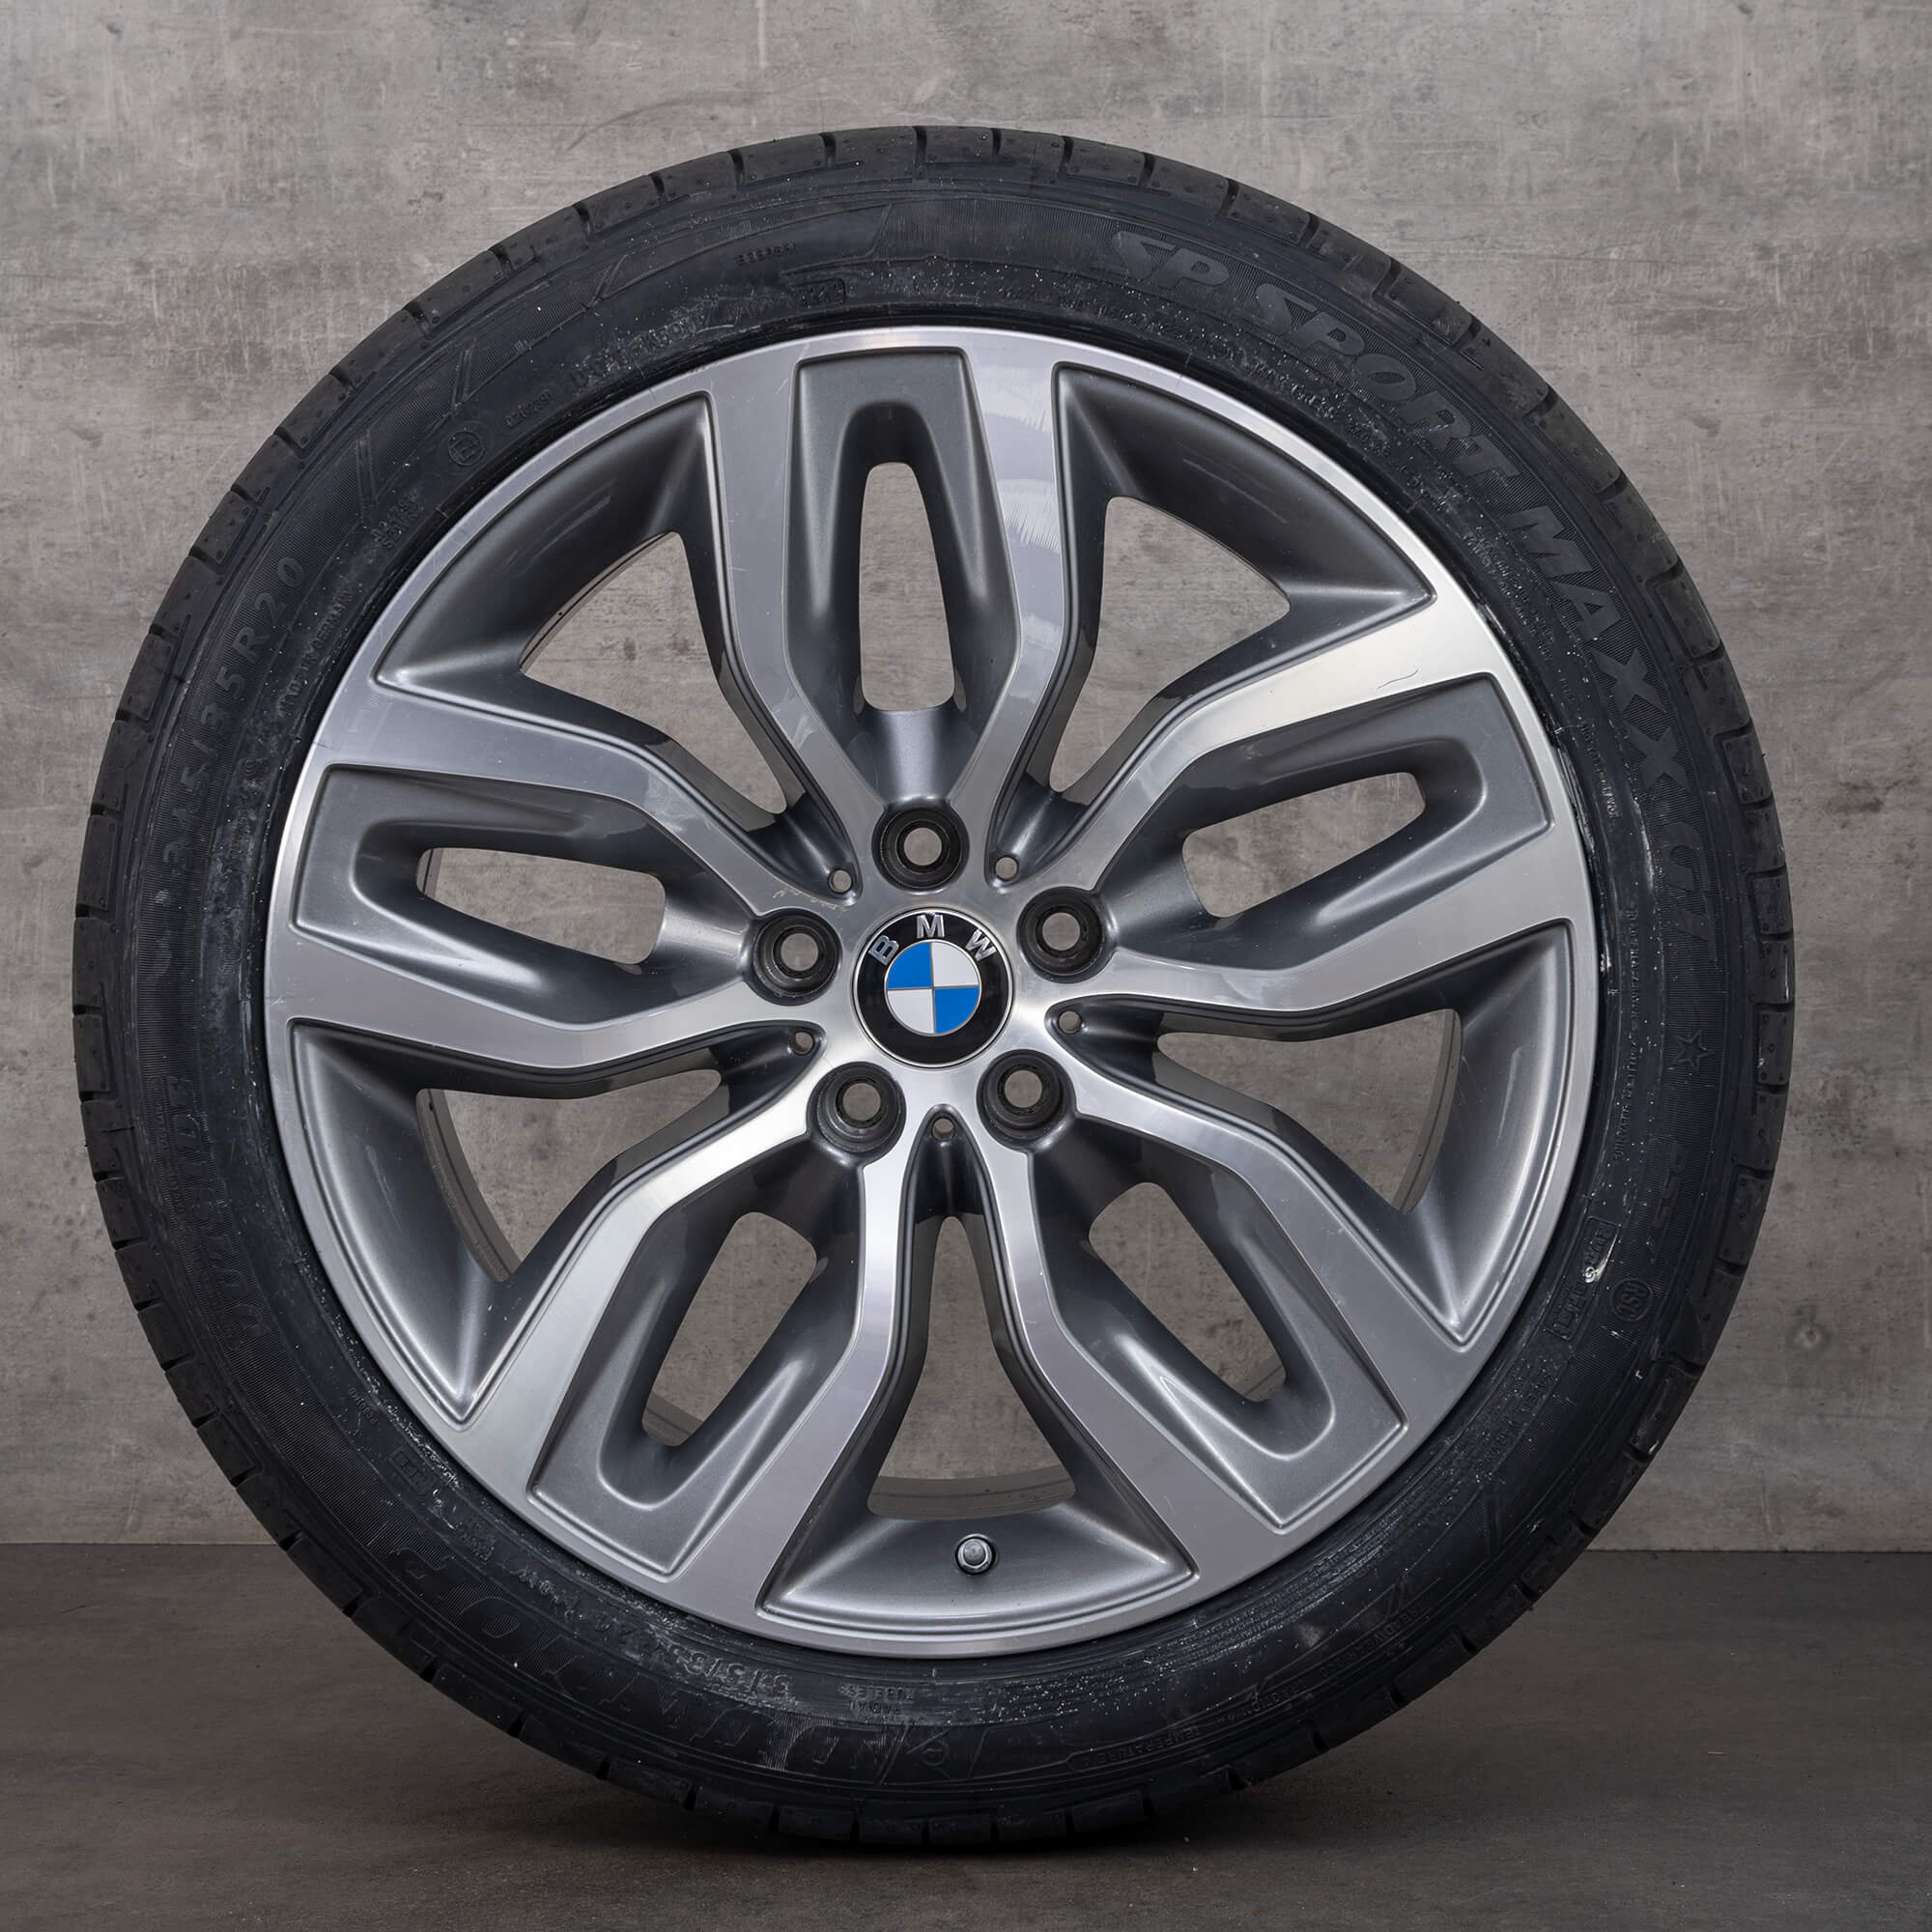 BMW X5 E70 F15 X6 F16 jantes pneus de verão rodas 20 polegadas 6788027 6788028